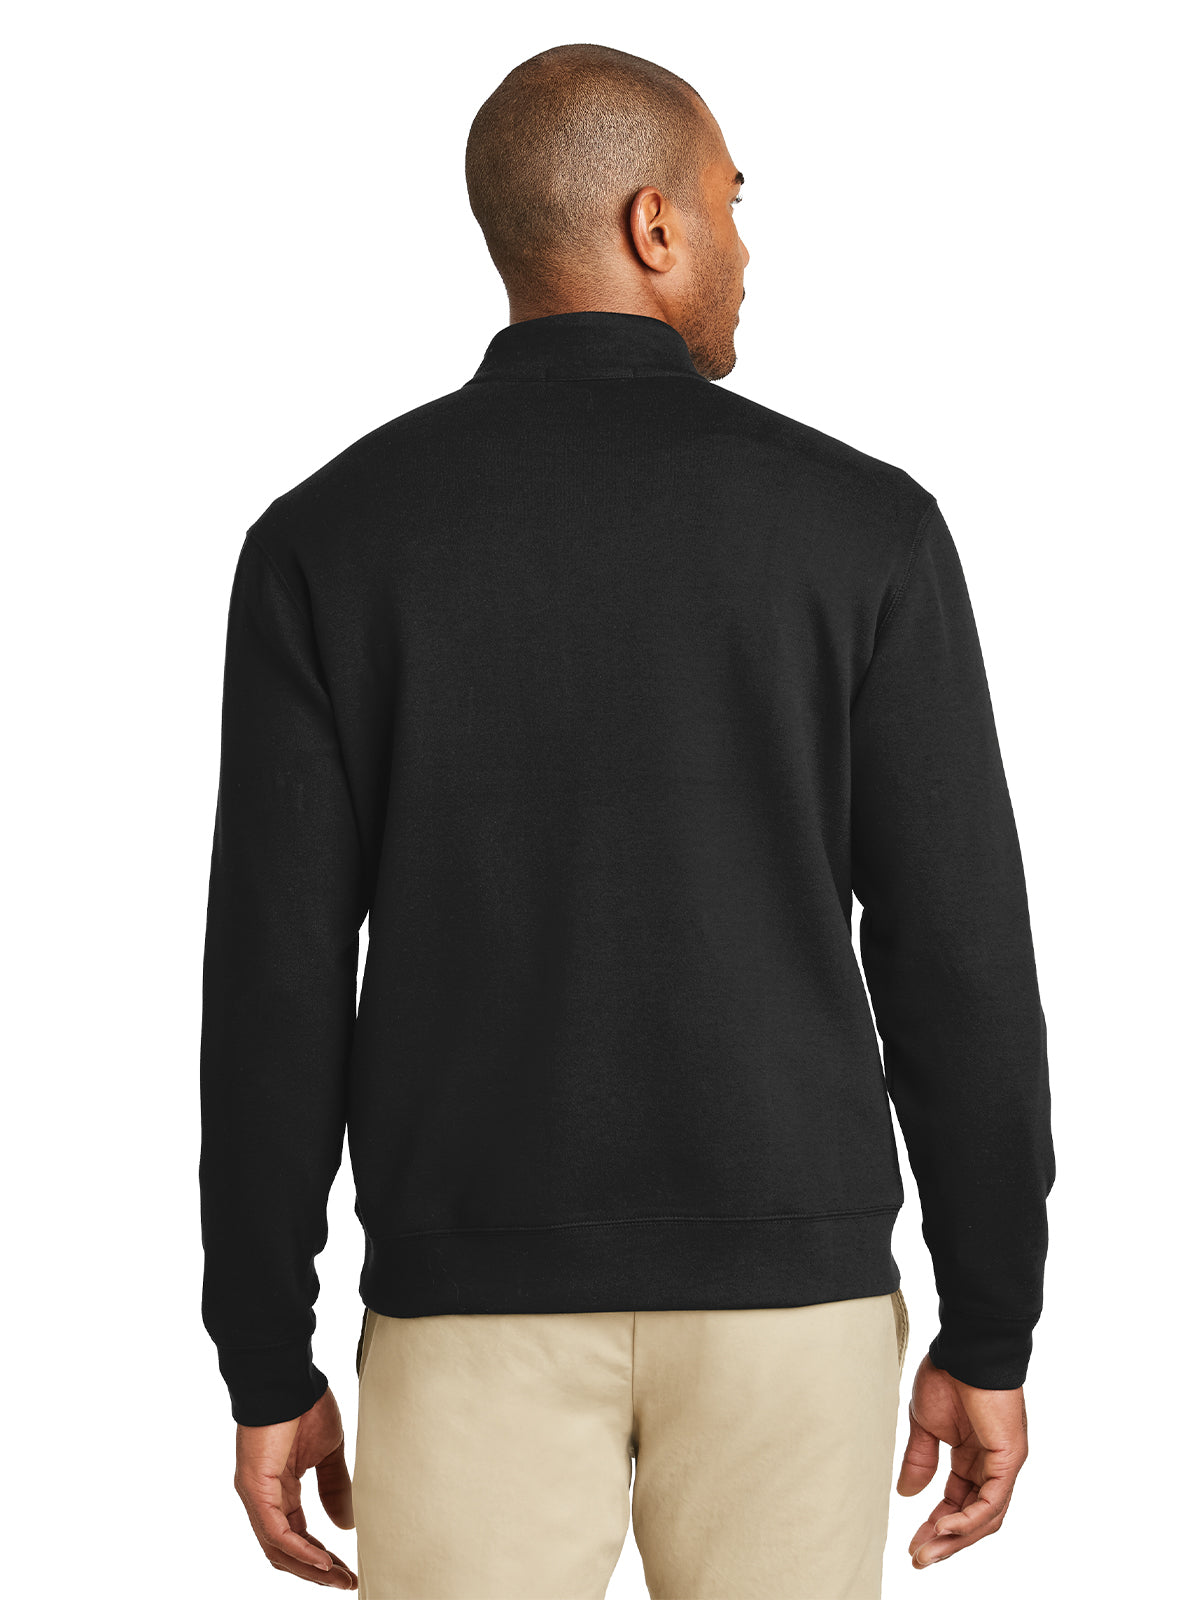 Men's 1/4 Zip Sweater